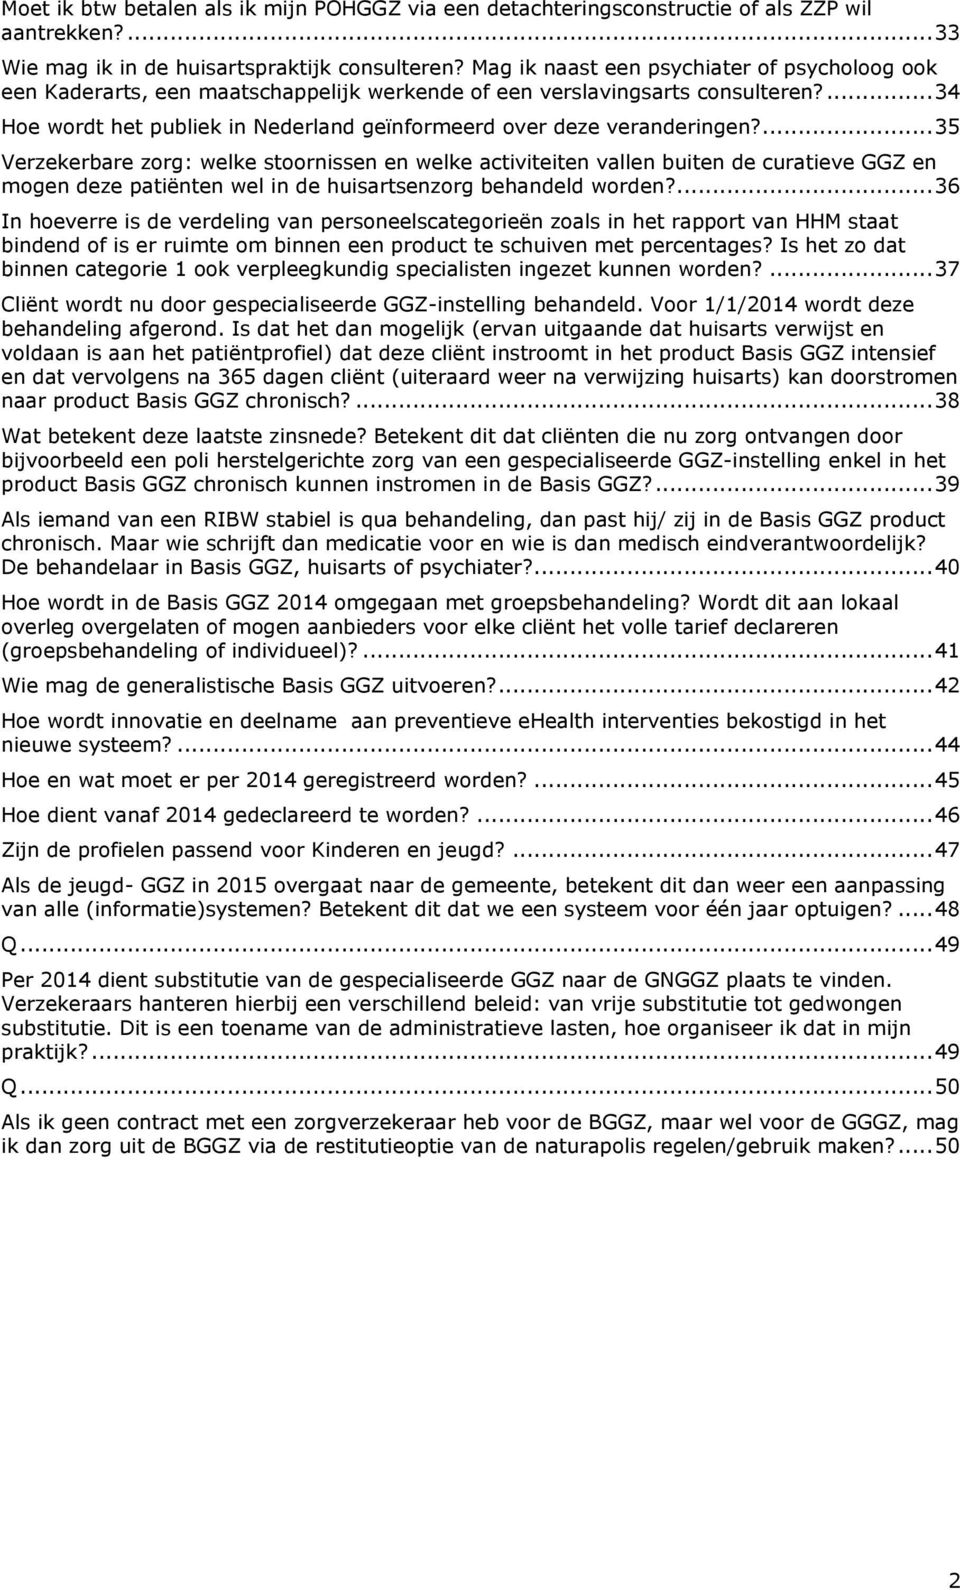 ... 34 Hoe wordt het publiek in Nederland geïnformeerd over deze veranderingen?